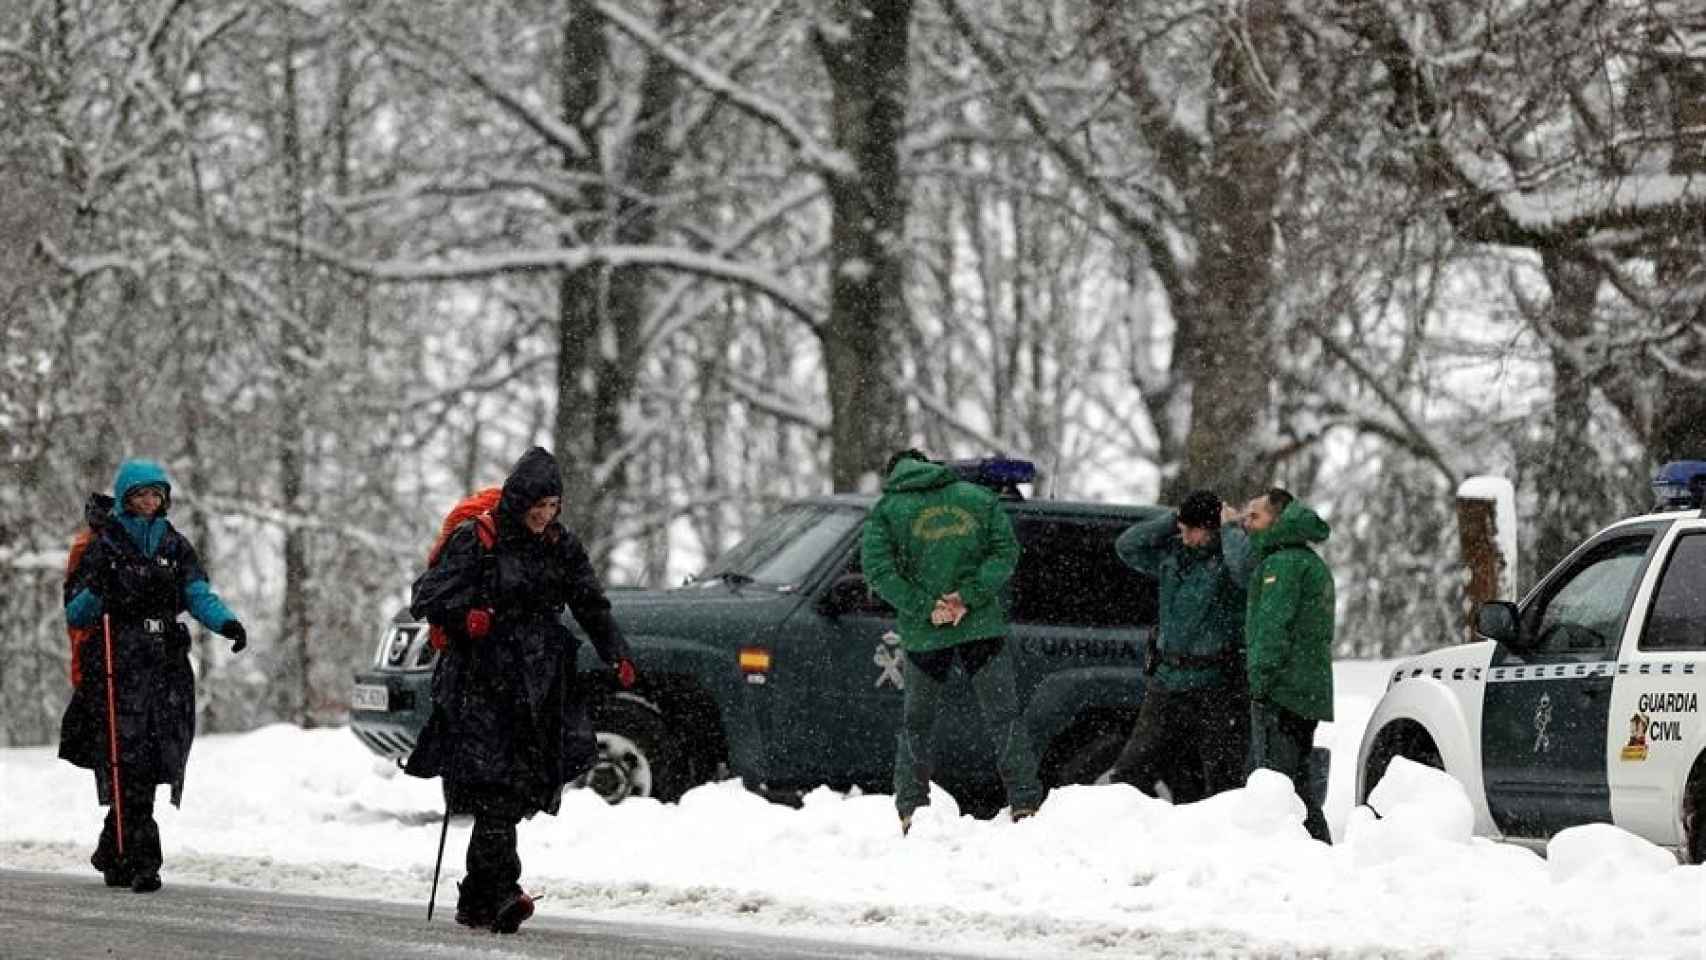 Carreteras de la Comunidad Foral de Navarra con los agentes de la Guardia Civil de Tráfico preparados para ayudar por el temporal de nieve.